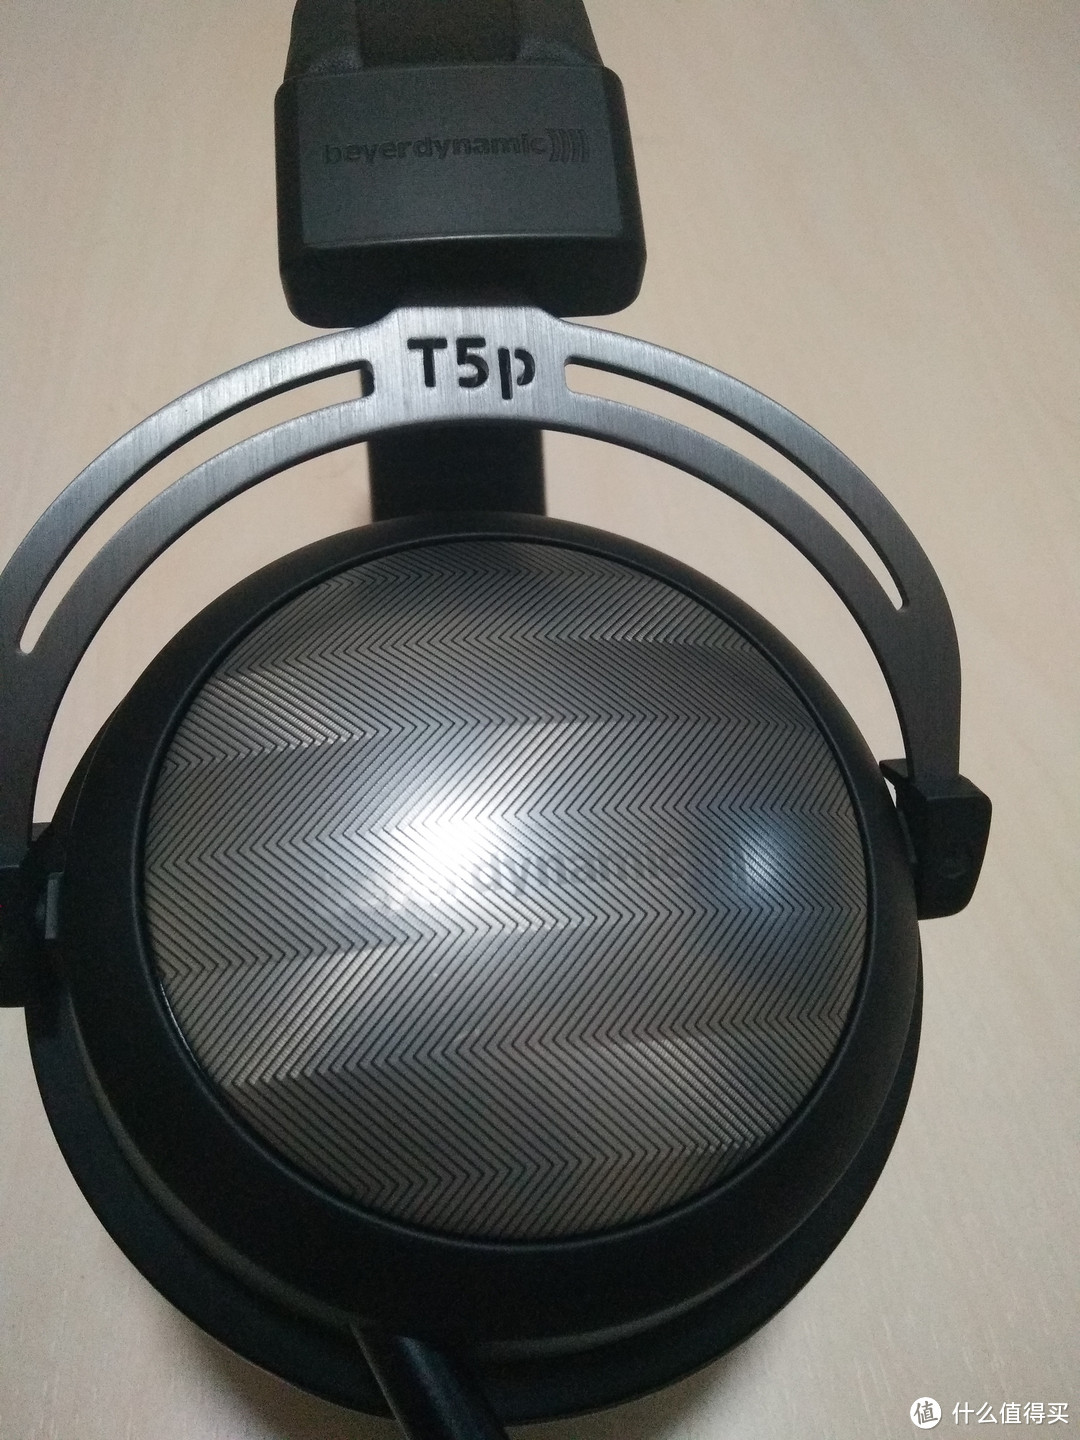 #原创新人# beyerdynamic 拜亚动力 T5p二代 头戴式耳机